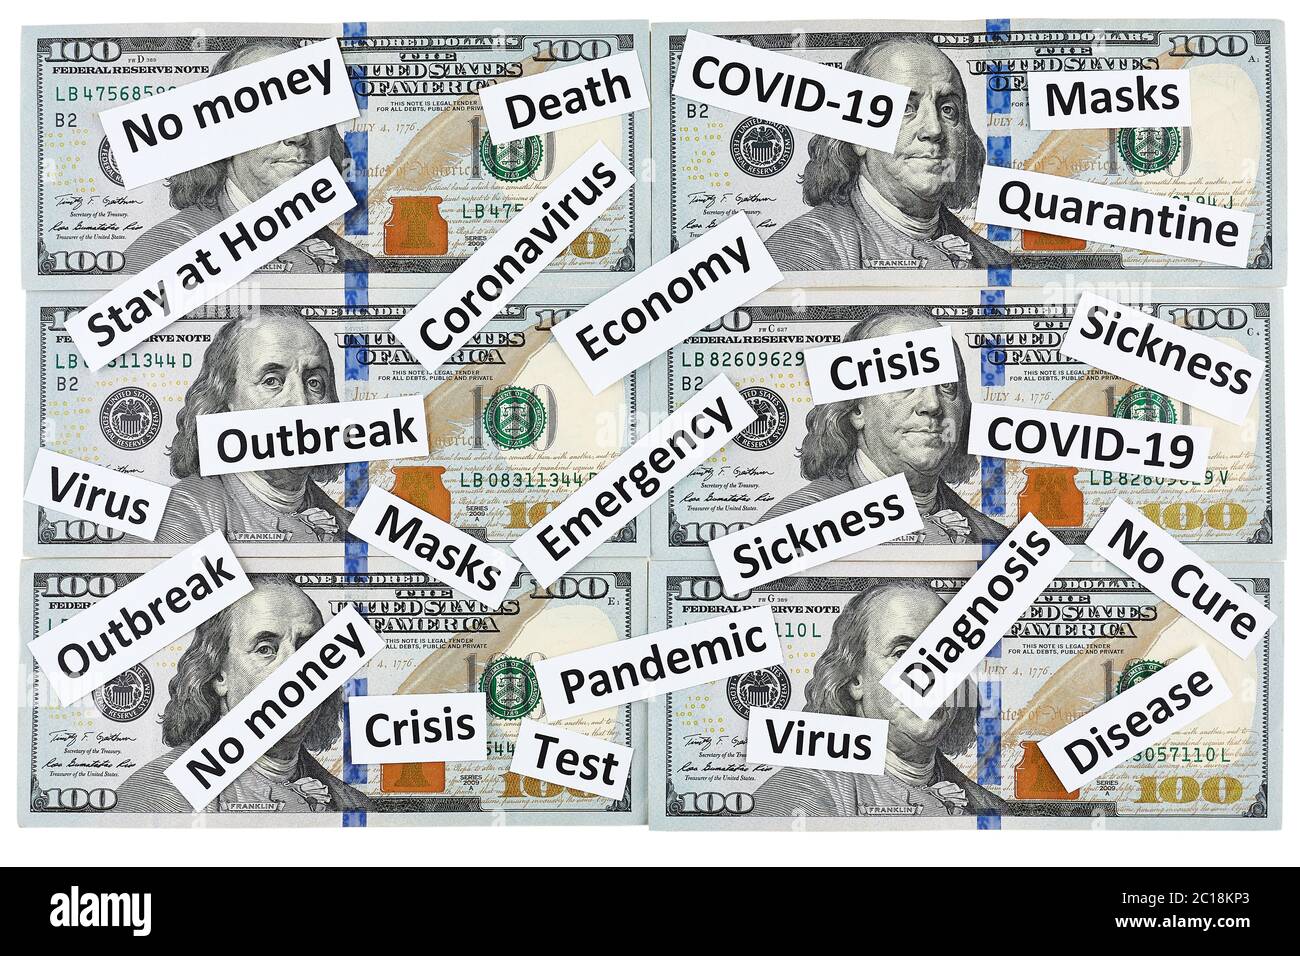 Coronavirus, COVID-19 headline clippings on 100 USD banknotes. Stock Photo